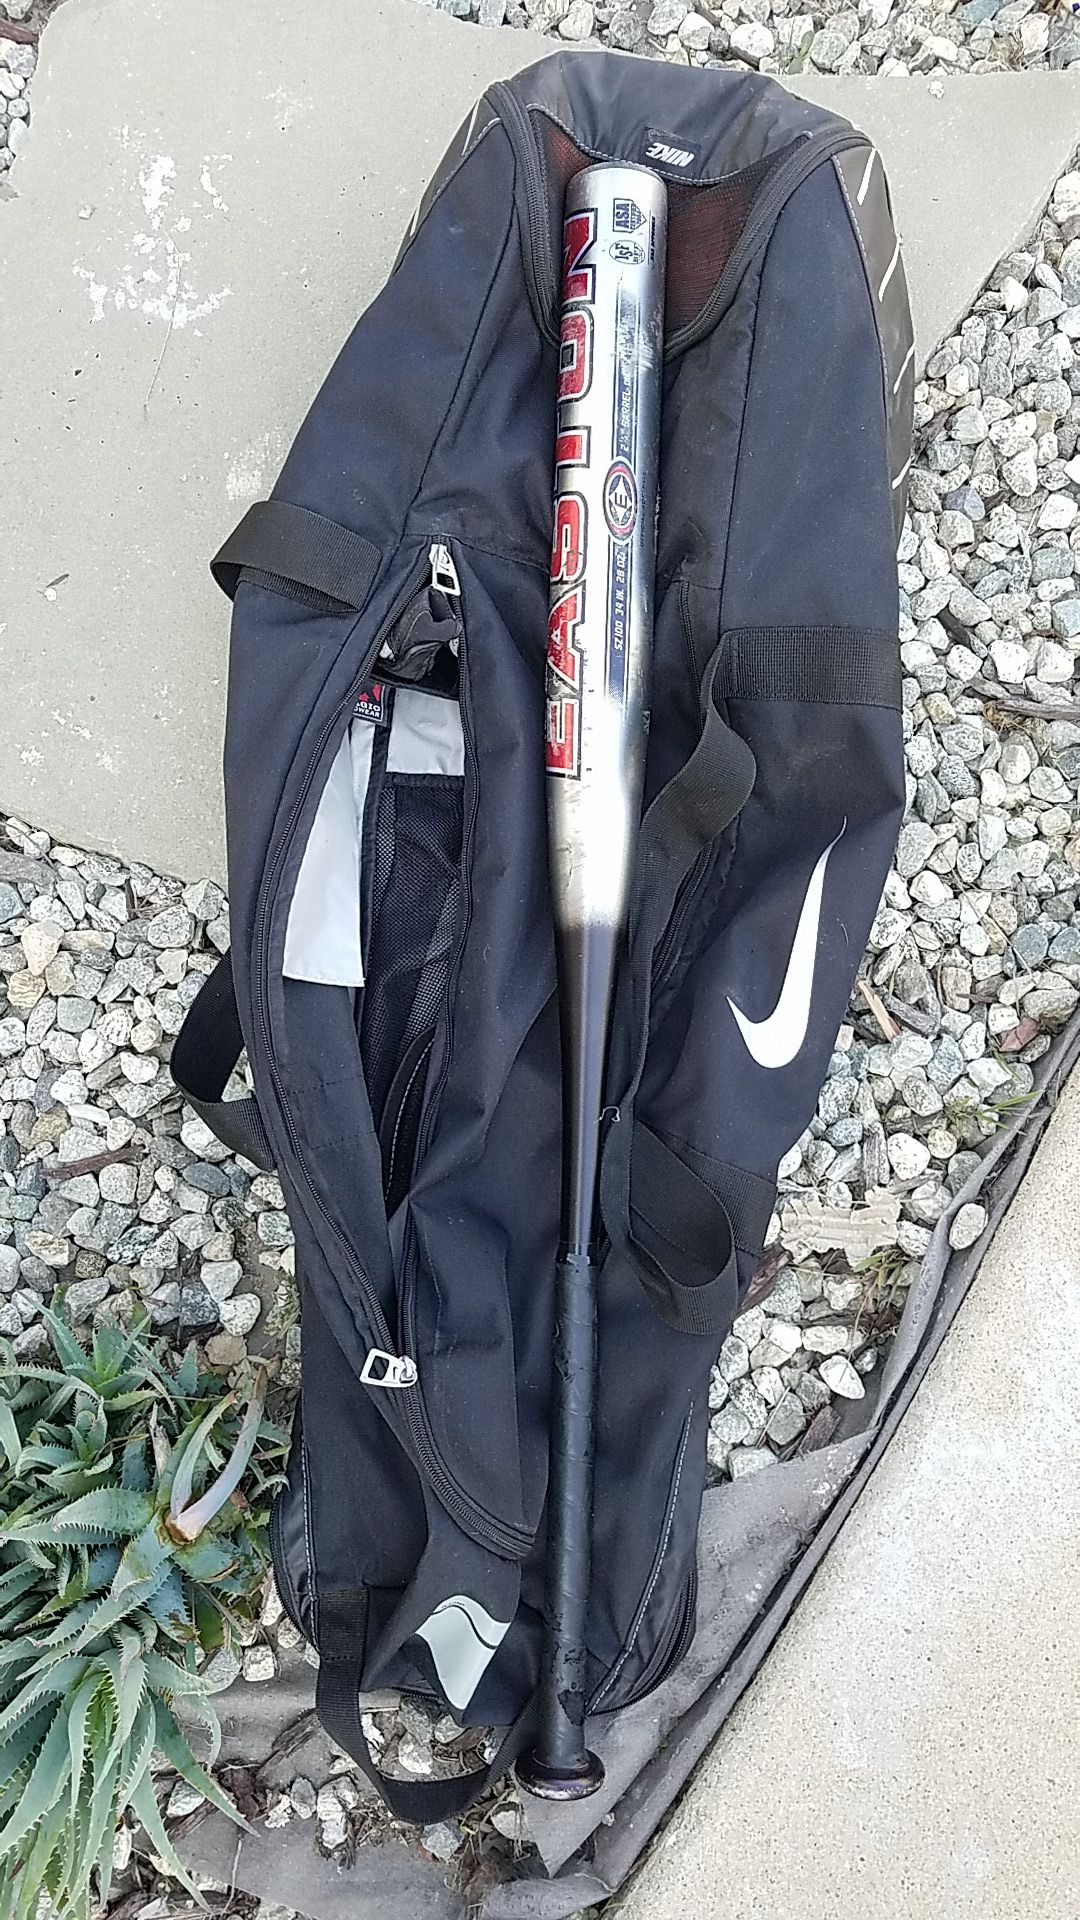 Metal baseball/softball bat and bag